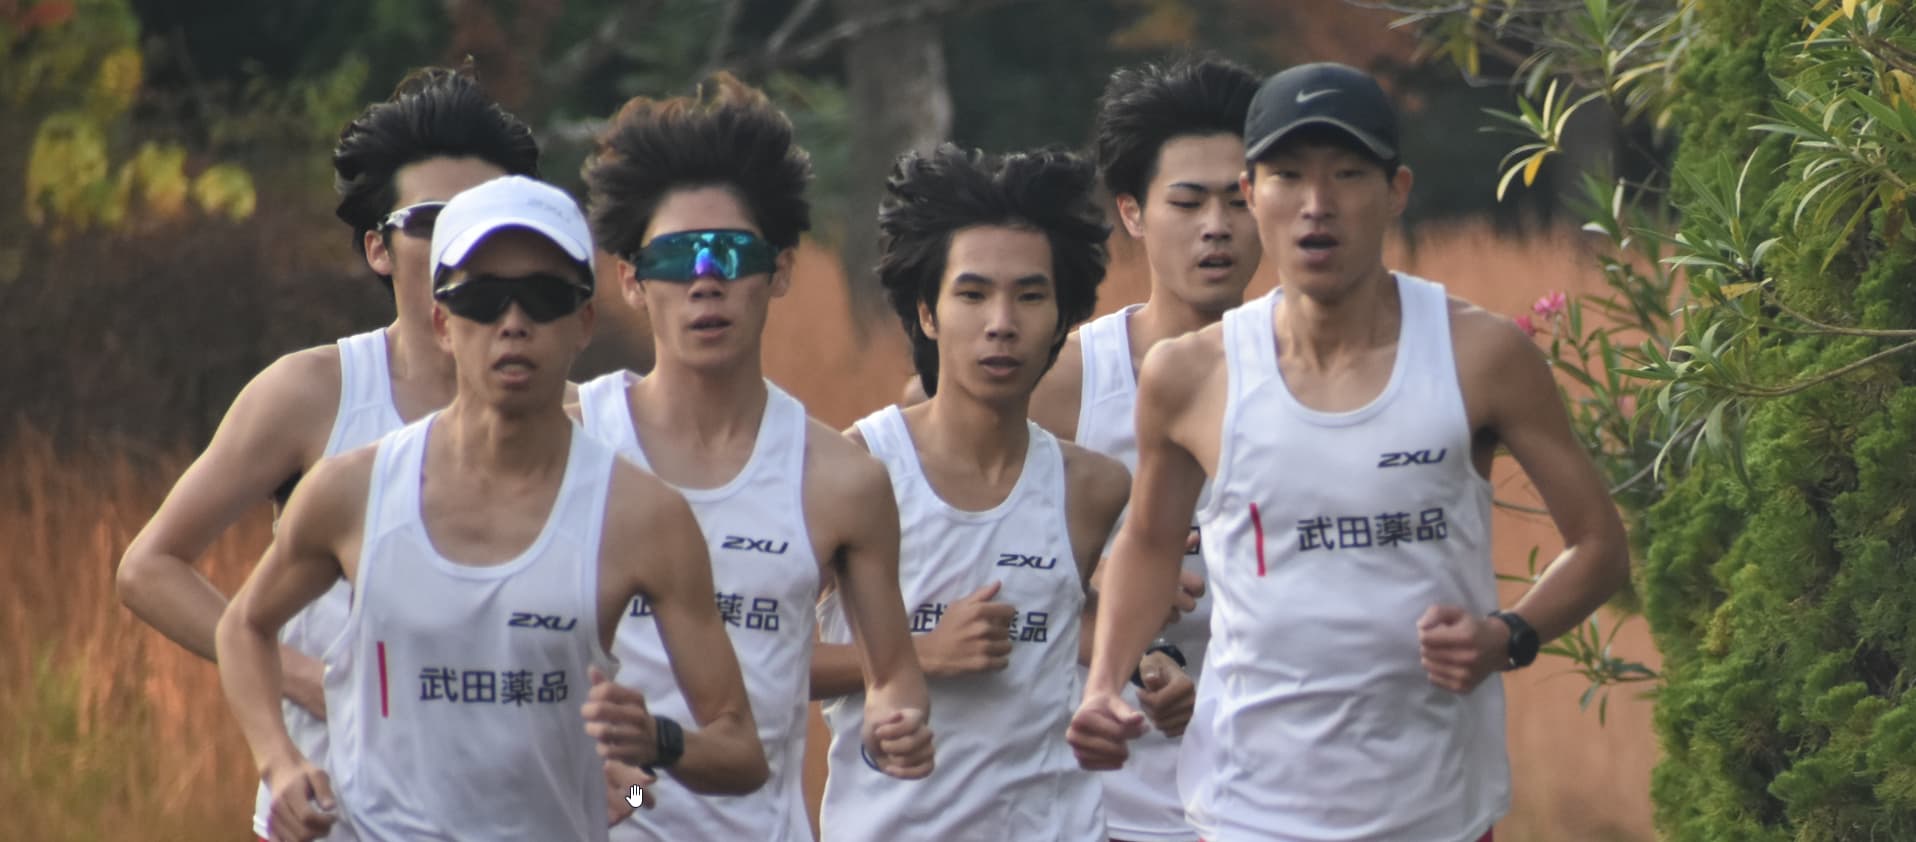 武田薬品社員たちがマラソン練習で走っている